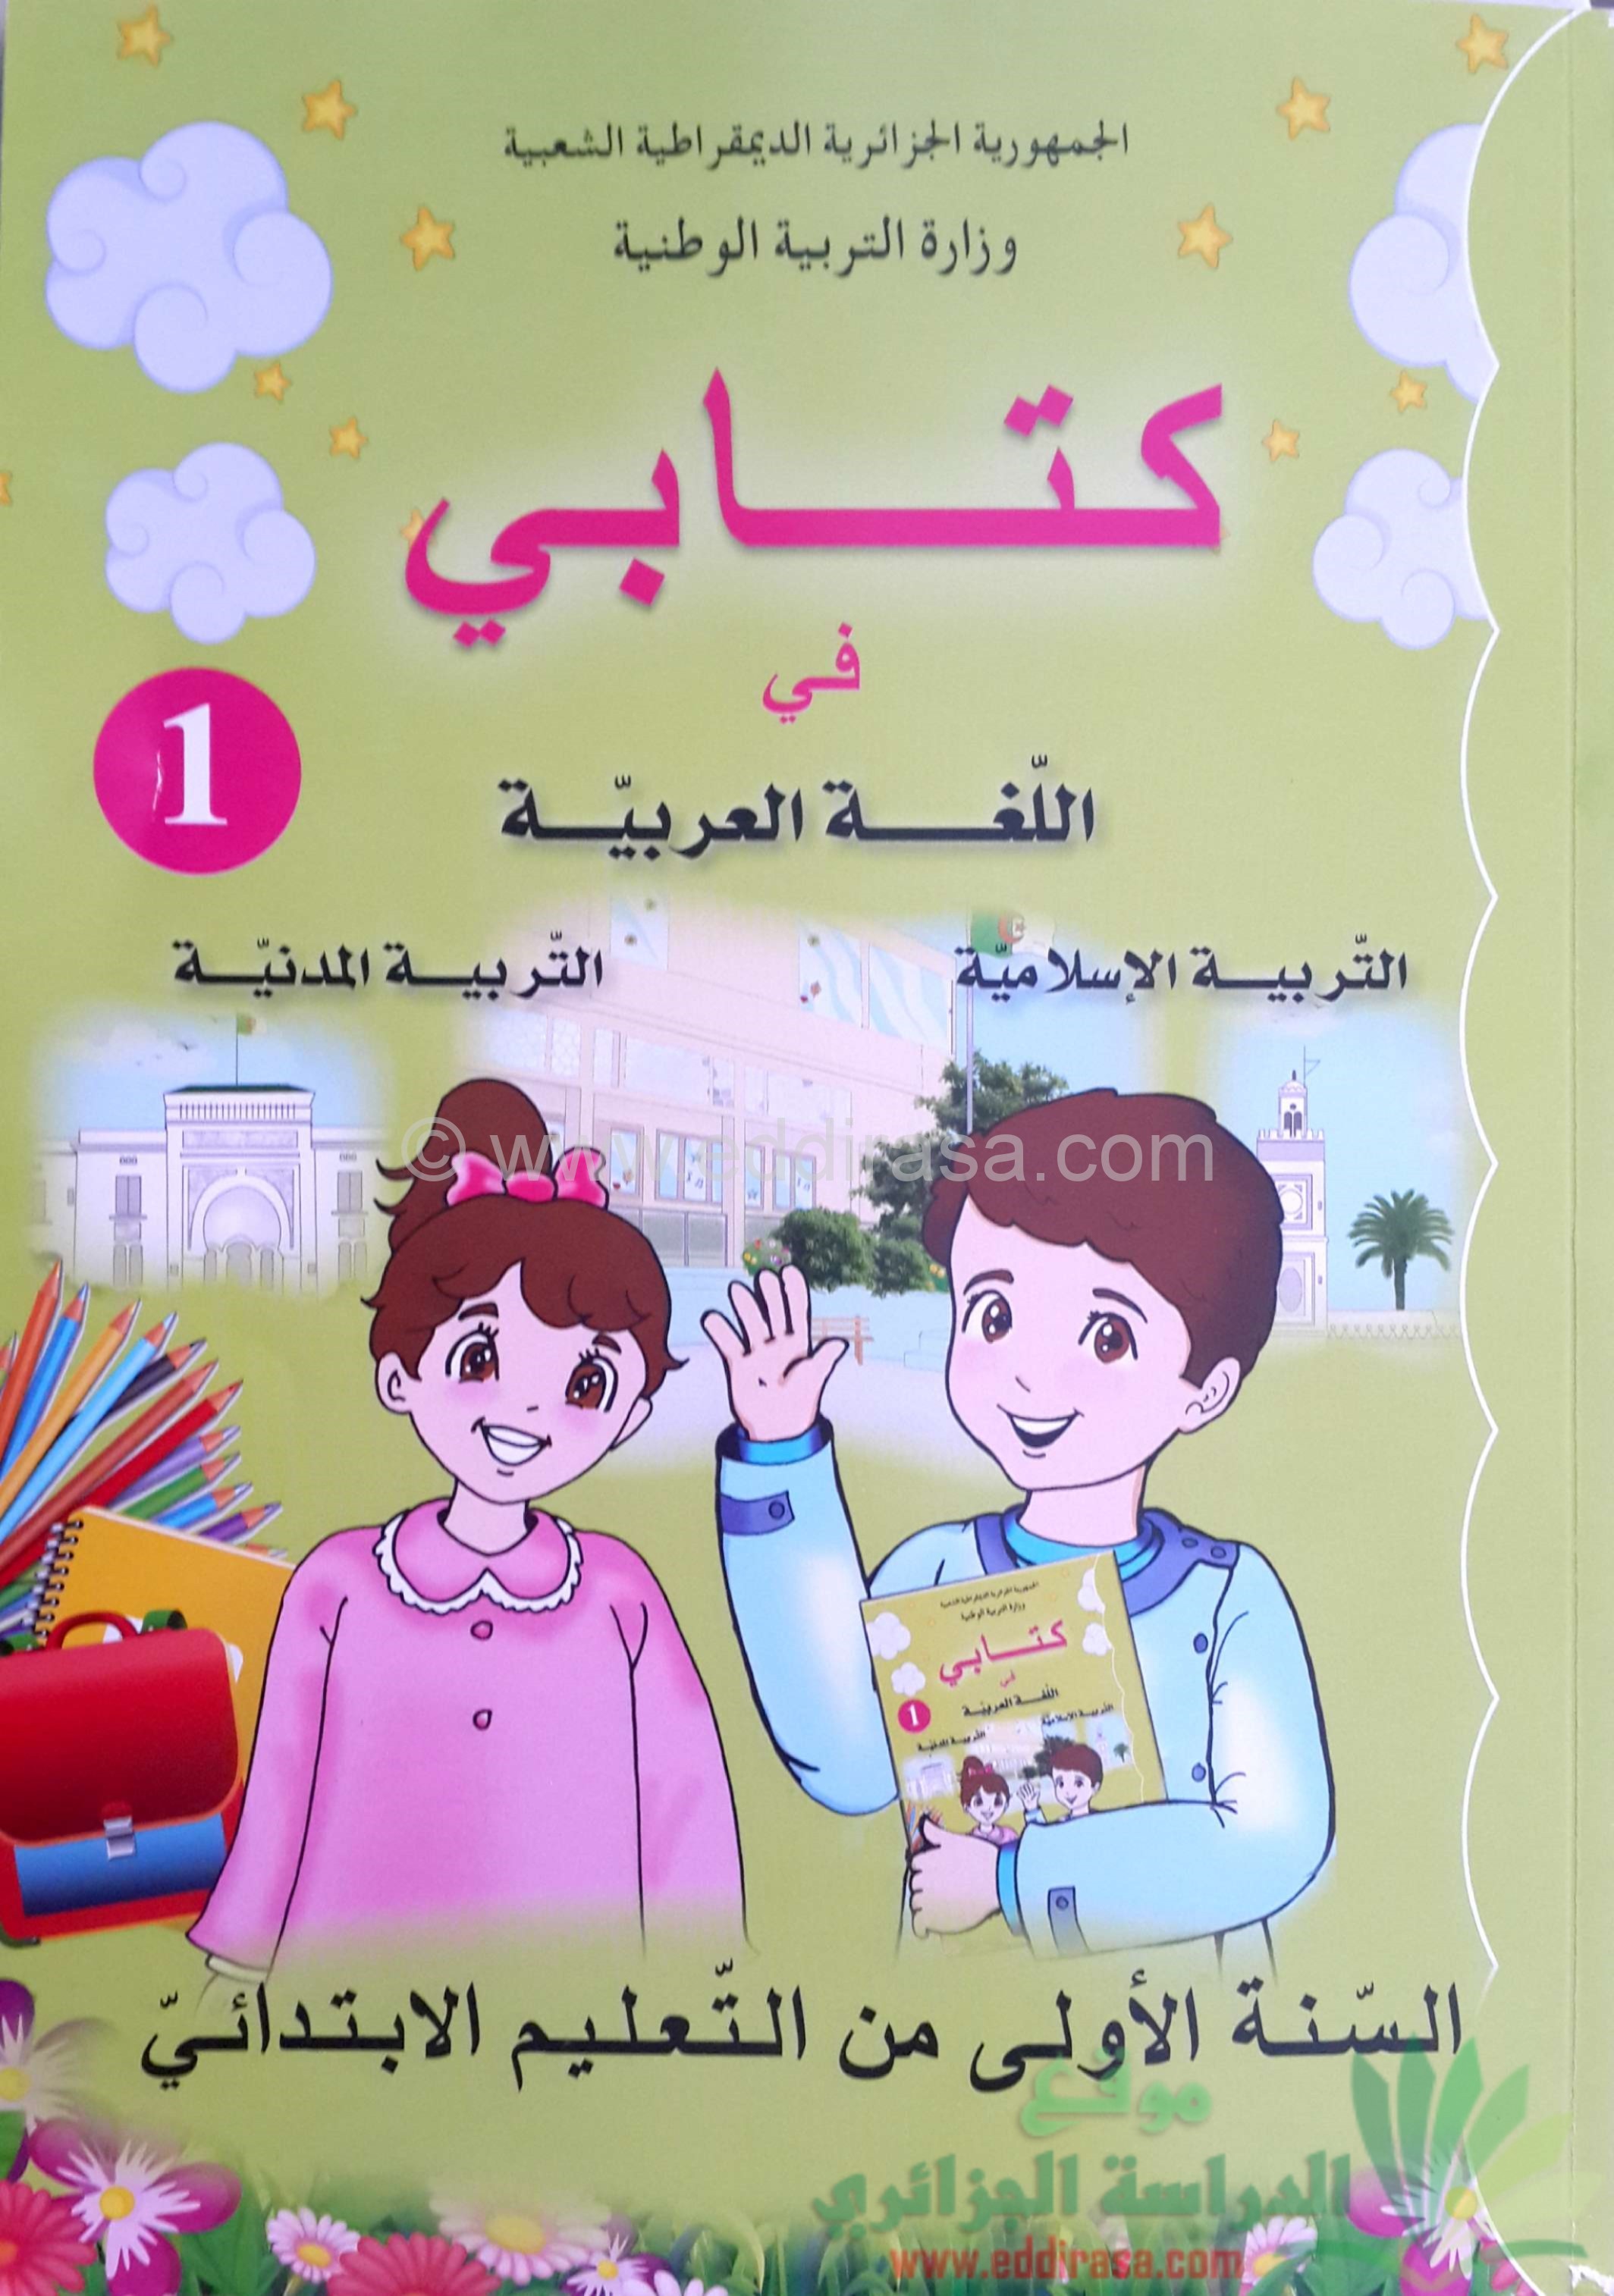 كتاب السنة الأولى ابتدائي المدرسي في مواد اللغة العربية و التربية الإسلامية و التربية المدنية